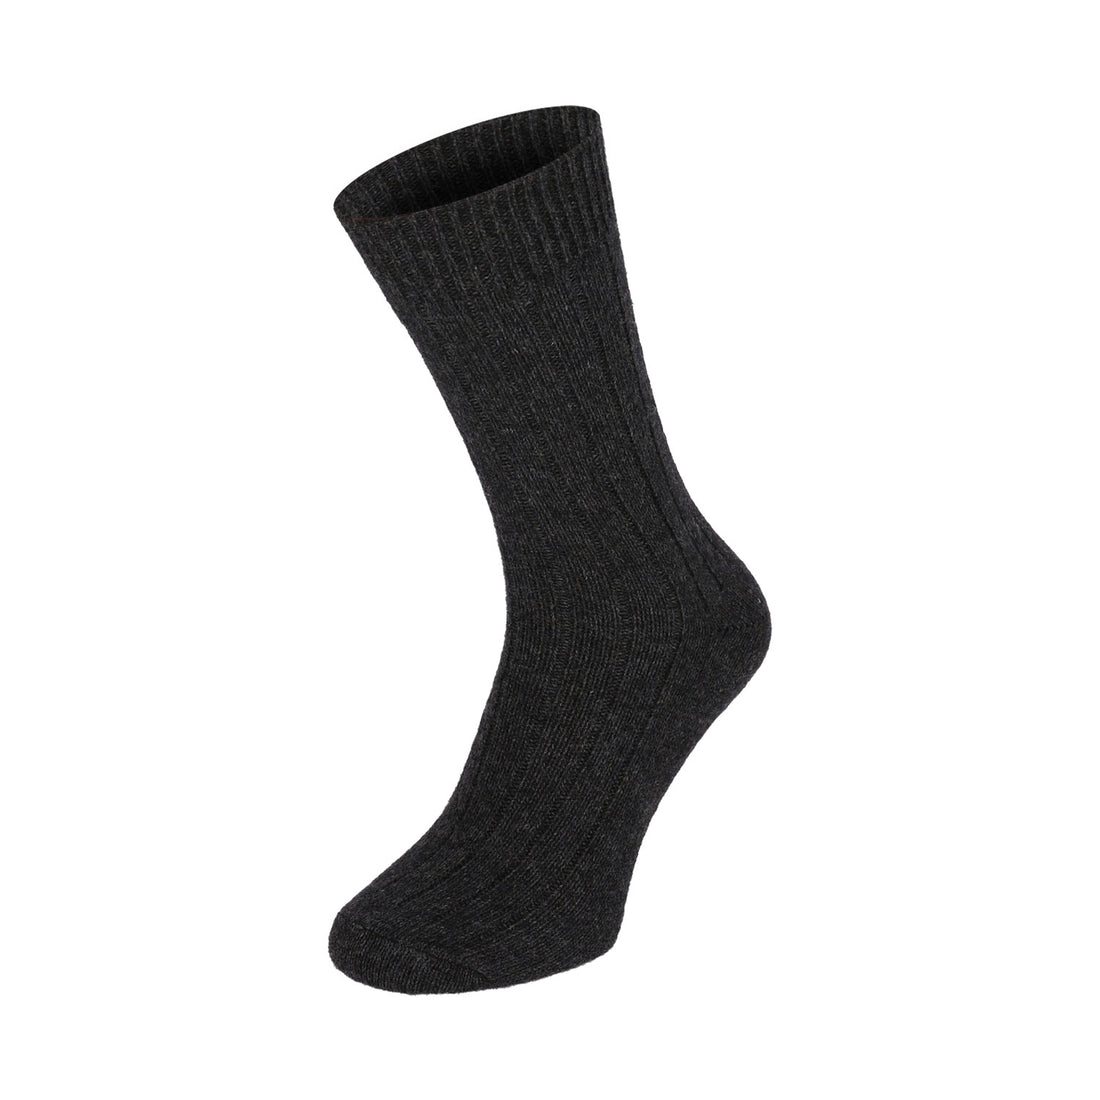 ChiliLifestyle Socken Winter Alpaka Wolle Damen Herren Warm 2 Paar